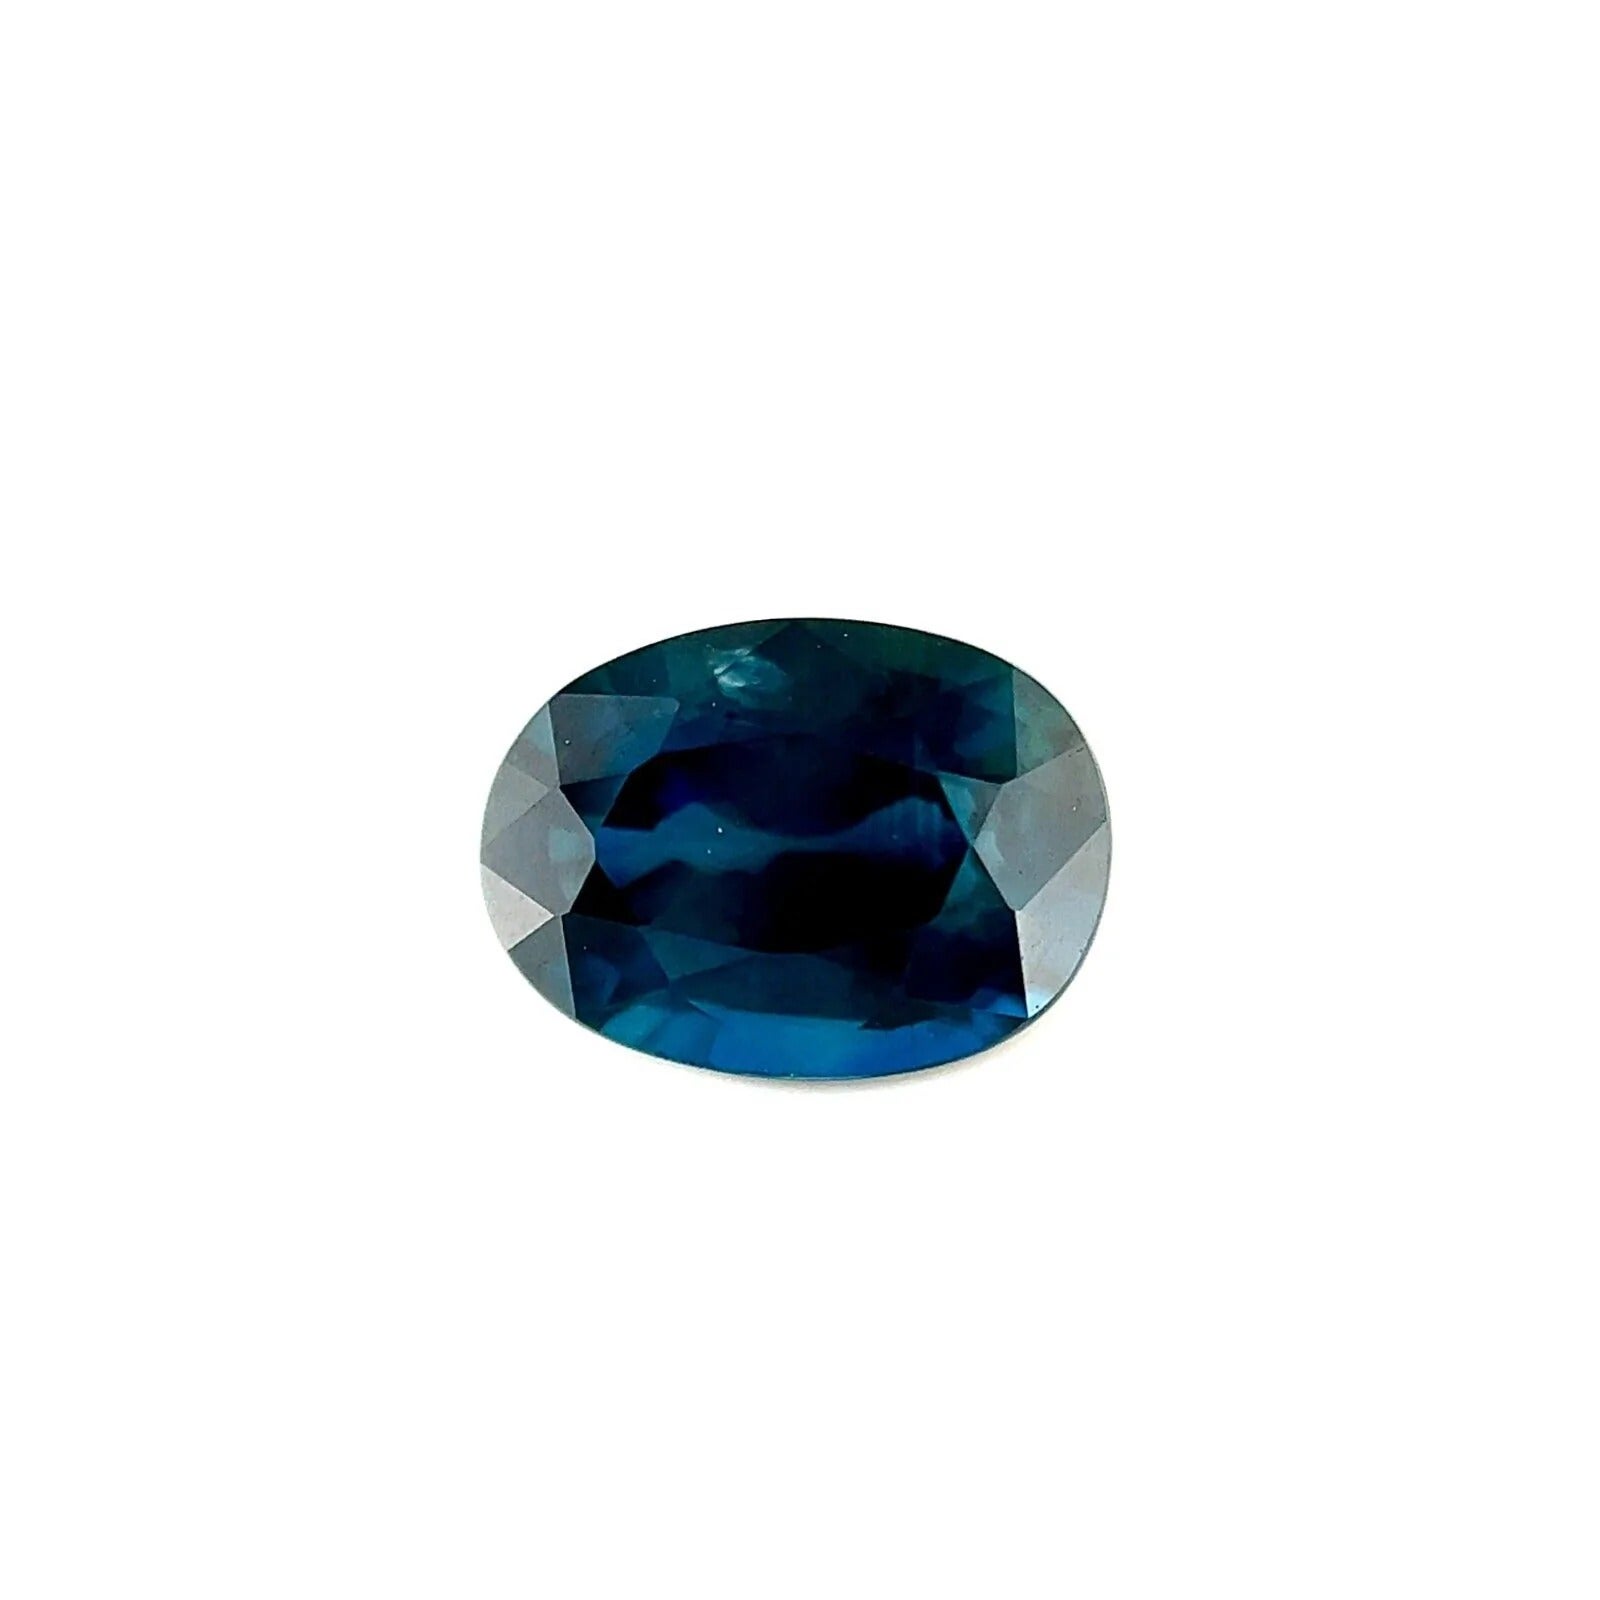 1.40ct Deep Green Blue Natural Sapphire Oval 'Egg' Cut Rare Gem 7.5x5.5mm